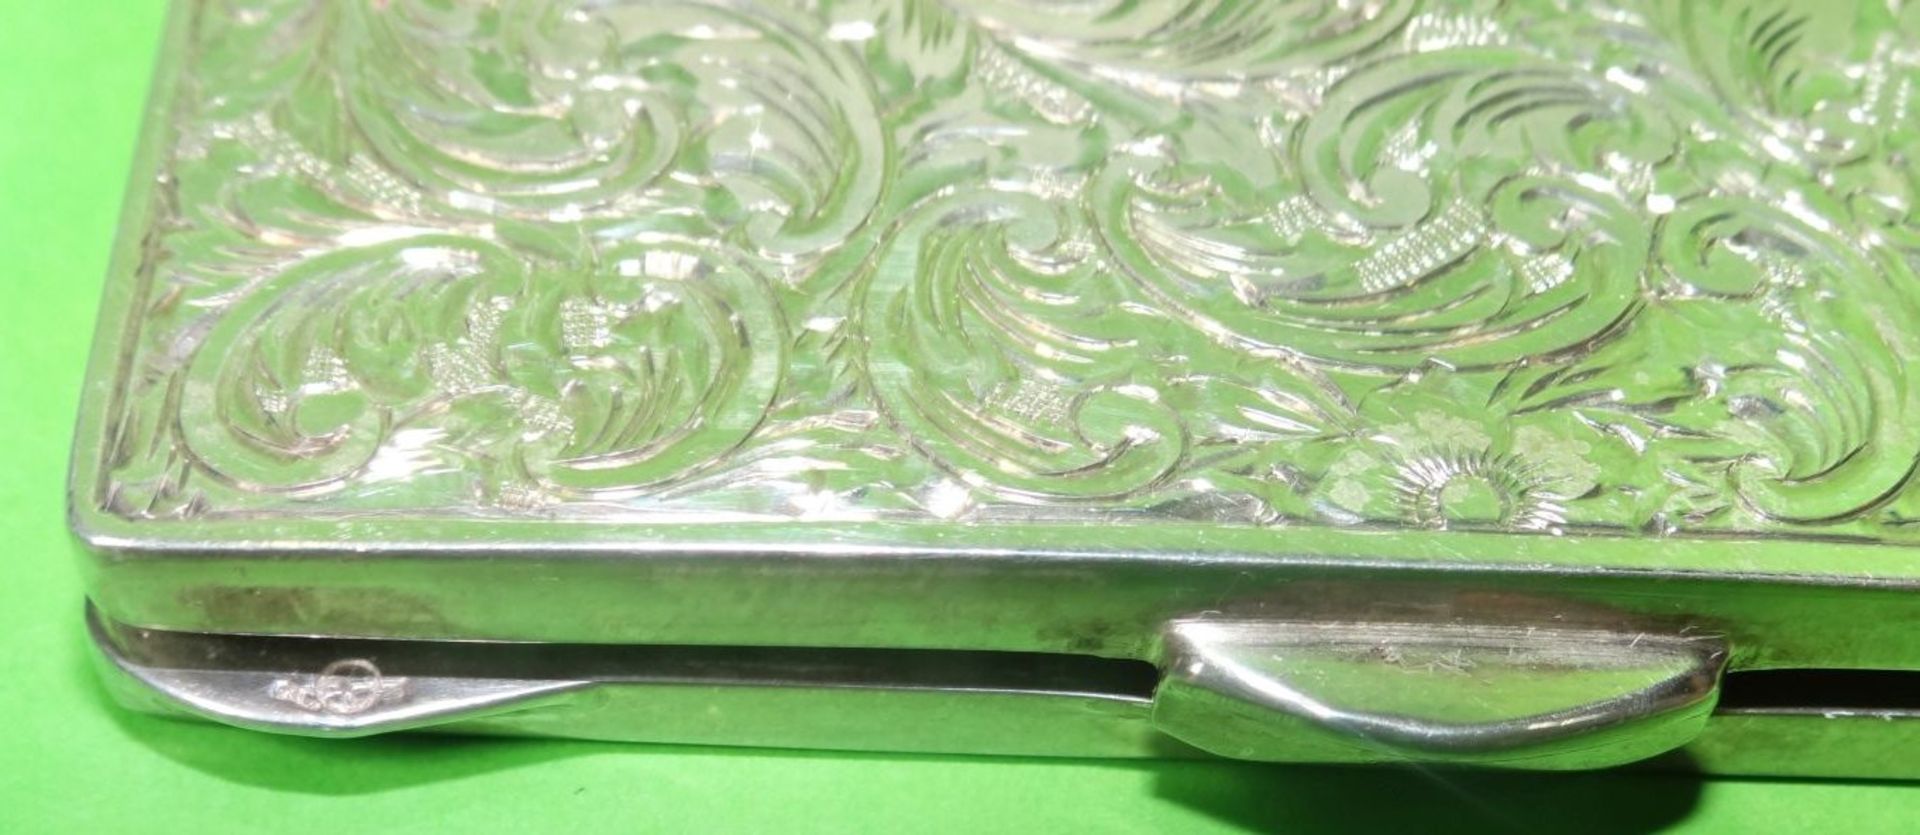 Schmink Etui mit Spiegel, Silber geprüft, 6,3x6,3 cm, 75 gramm mit Spiege- - -22.61 % buyer's - Image 3 of 5